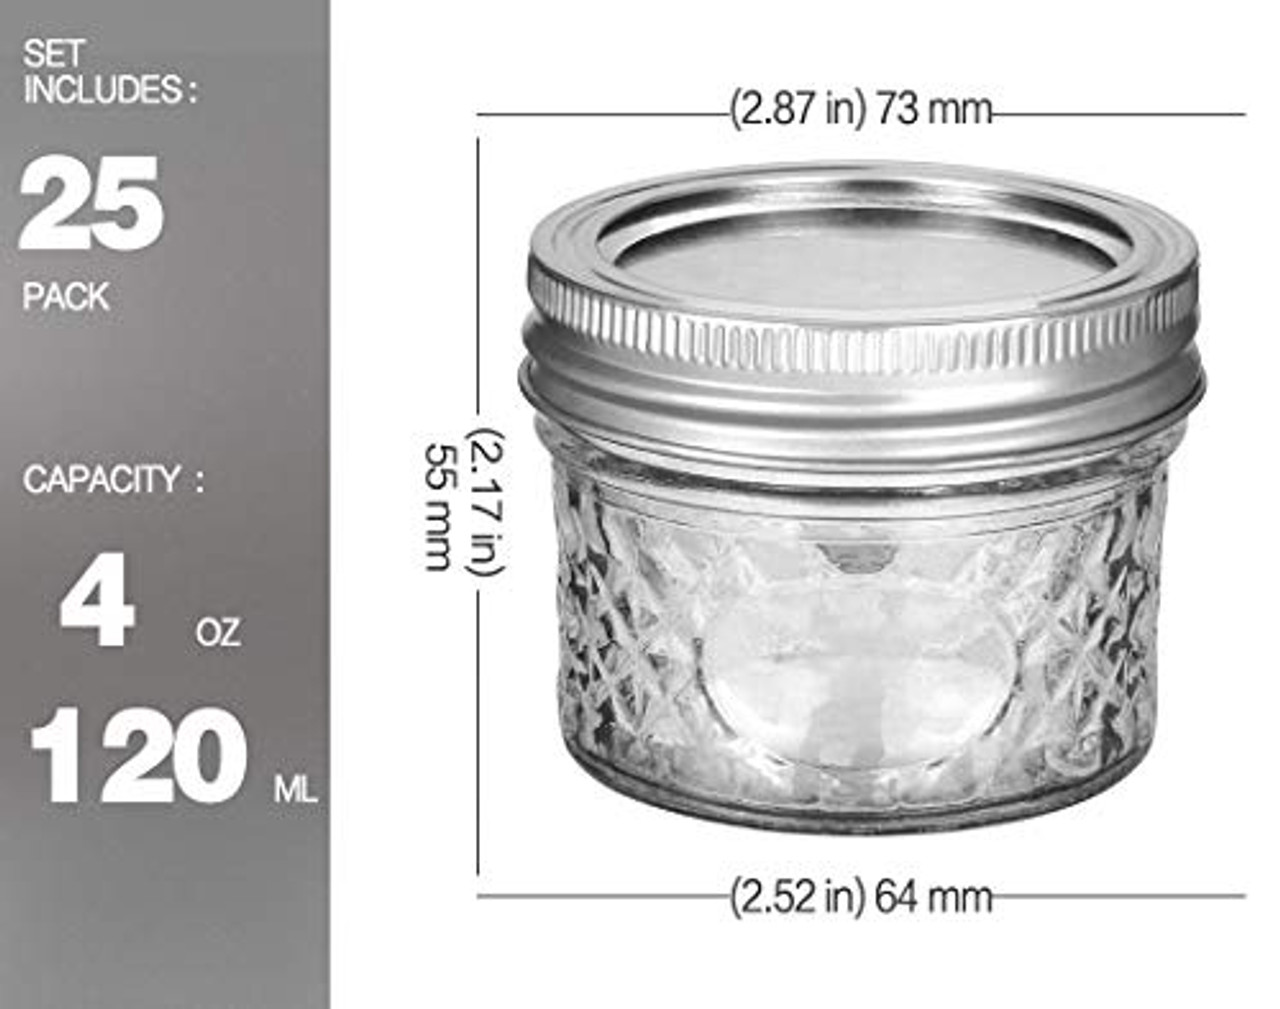 KAMOTA Mason Jars, 8 oz Glass Jars With Regular Lids and Bands, Ideal for  Jam, Honey, Wedding Favors, Shower Favors, DIY Spice Jars, 24 PACK, Extra  24